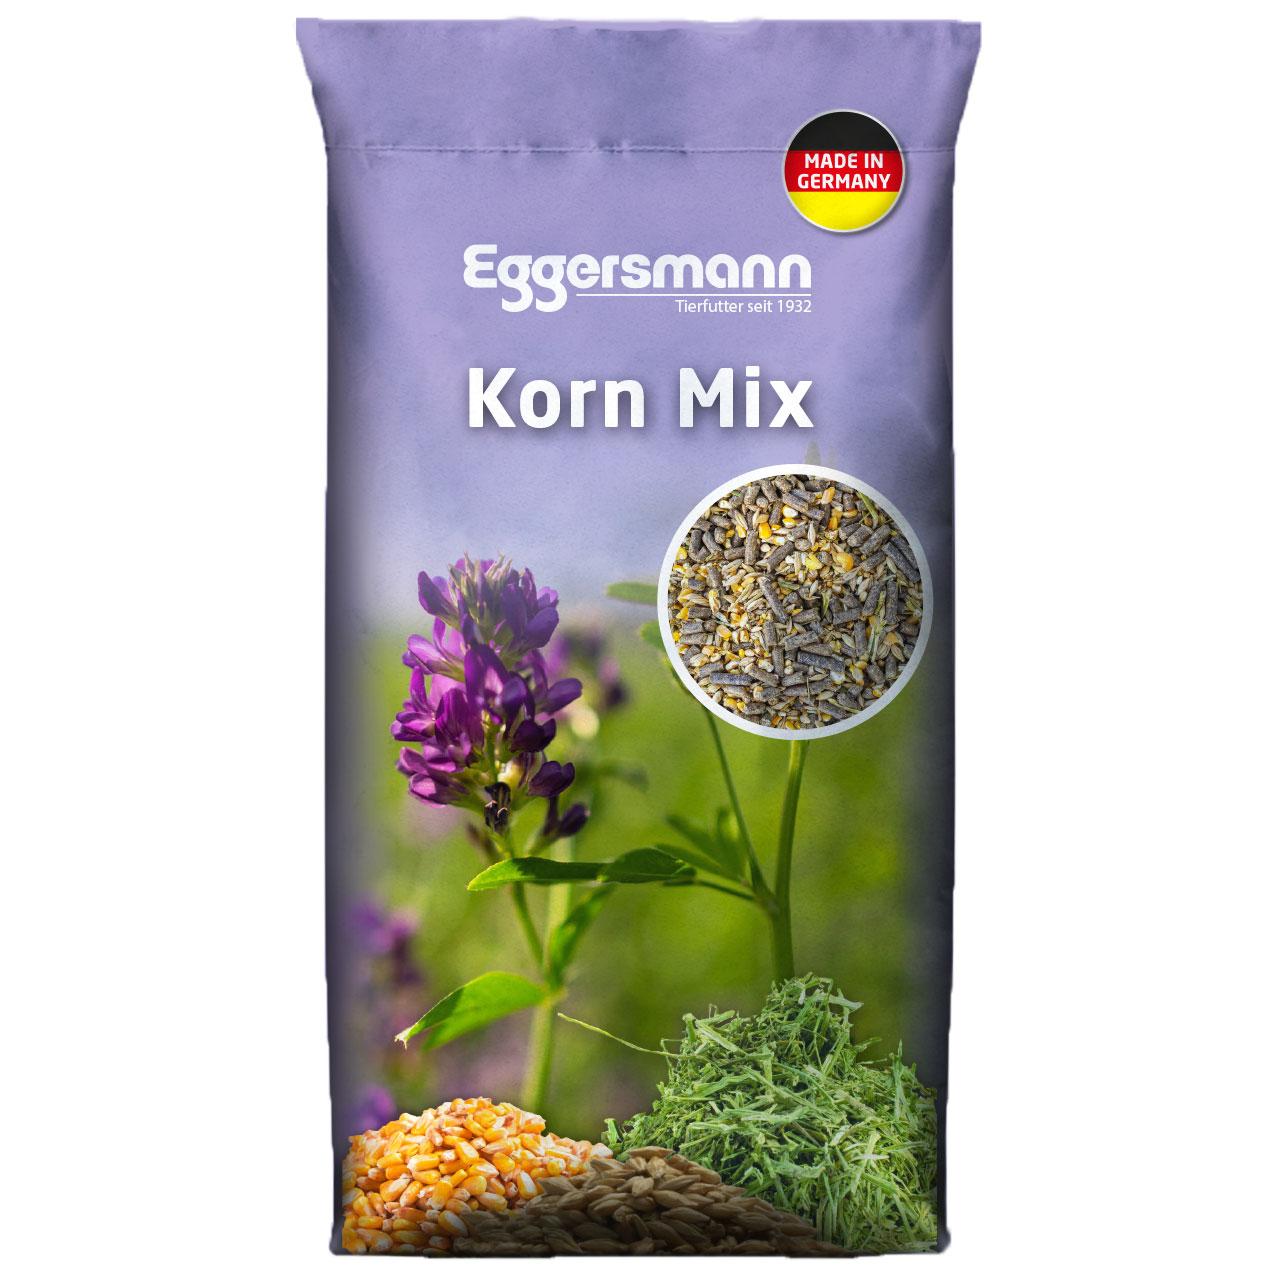 Eggersmann Korn Mix 30 kg